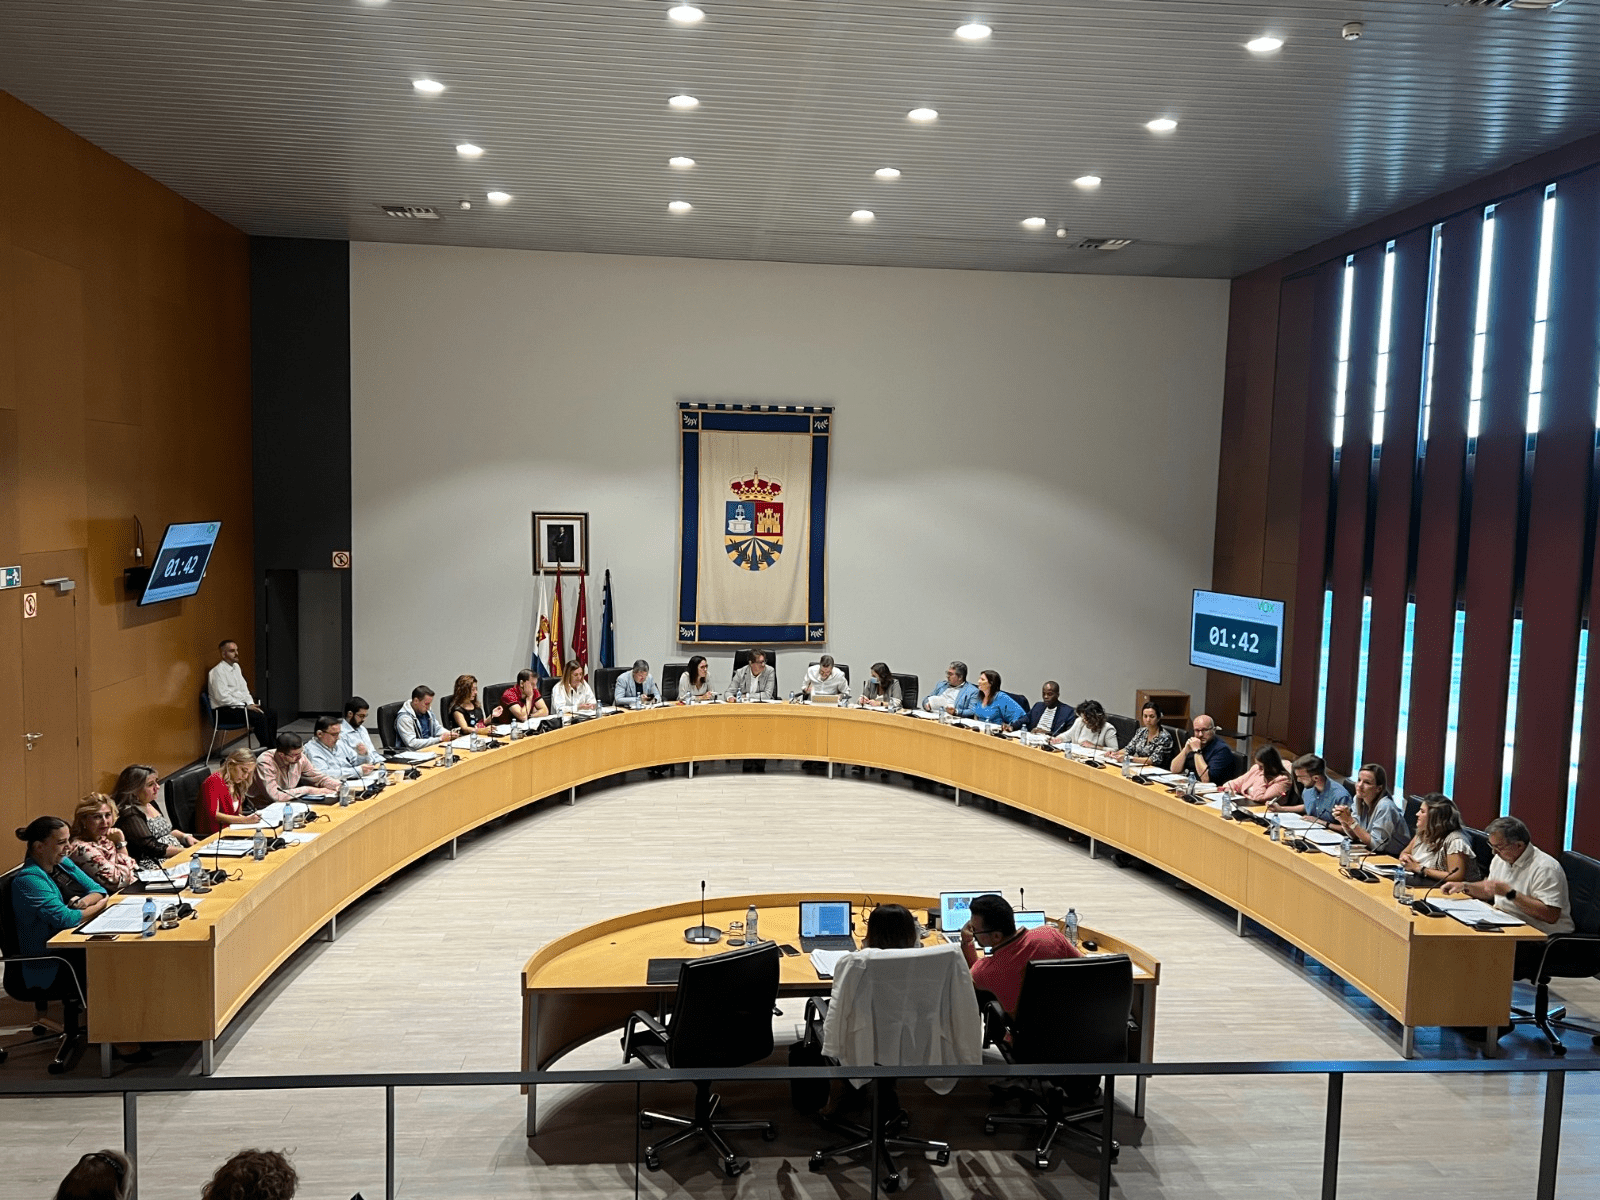 El Pleno de Fuenlabrada solicita la reprobación de la consejera de Asuntos Sociales por su gestión del Centro de La Cantueña, alegando falta de diálogo y respeto a la autonomía municipal.